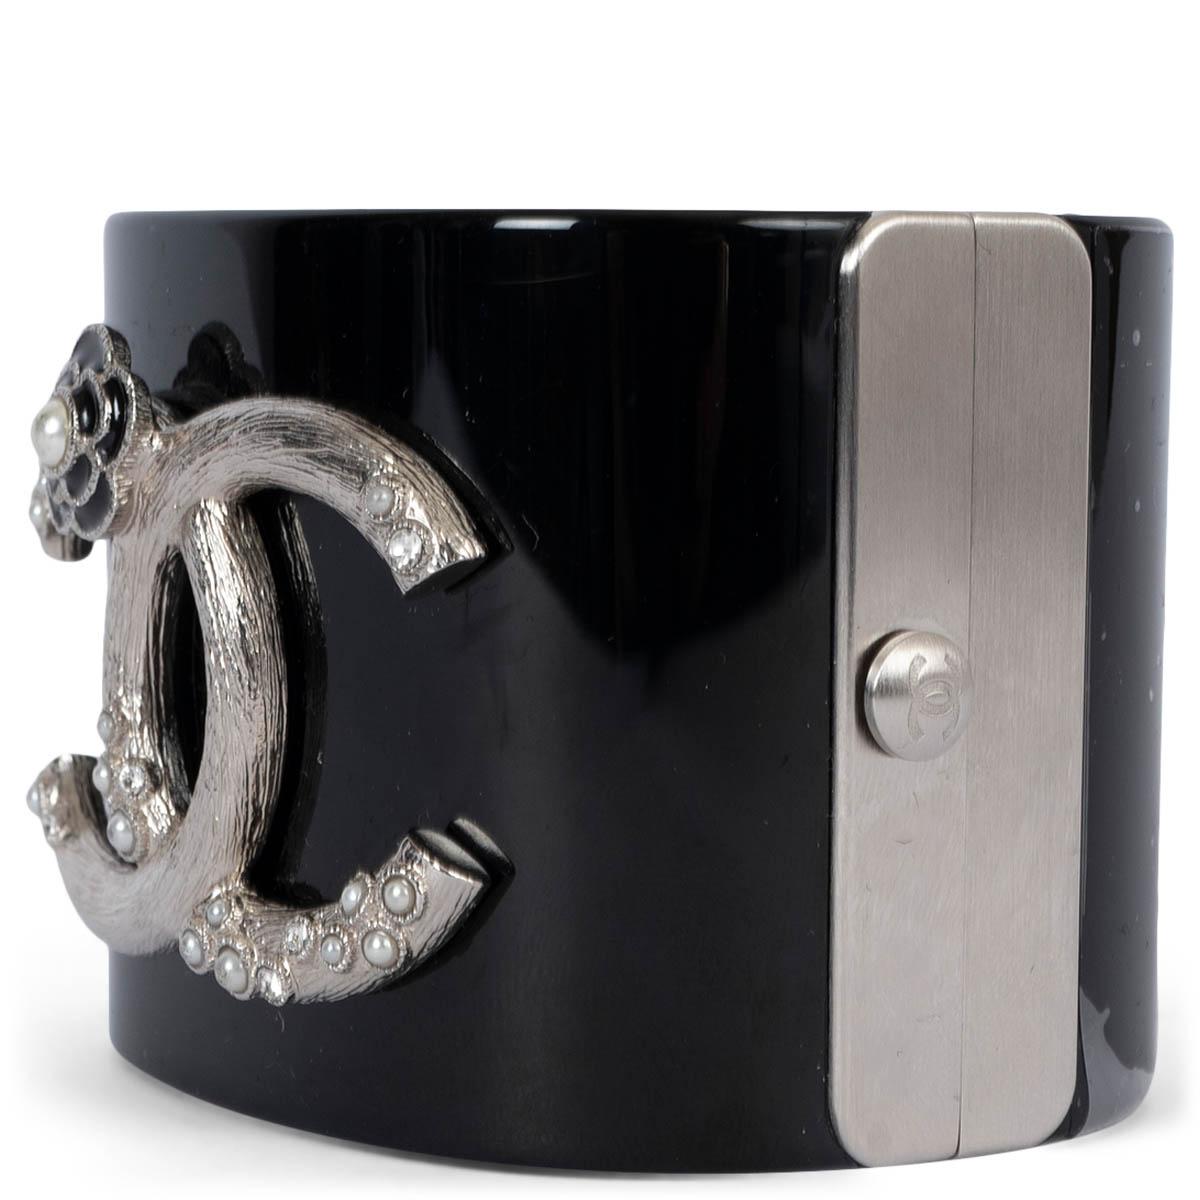 100% authentische Chanel 2014 Kamelie Manschette in schwarz glänzendem Harz mit CC-Logo mit faux Mini-Perlen verziert. Brandneu - Schutzfolie intakt. Wird mit Staubbeutel und Box geliefert. 

Messungen
Modell	Chanel14C
Breite	5.2cm (2in)
Umfang	17cm